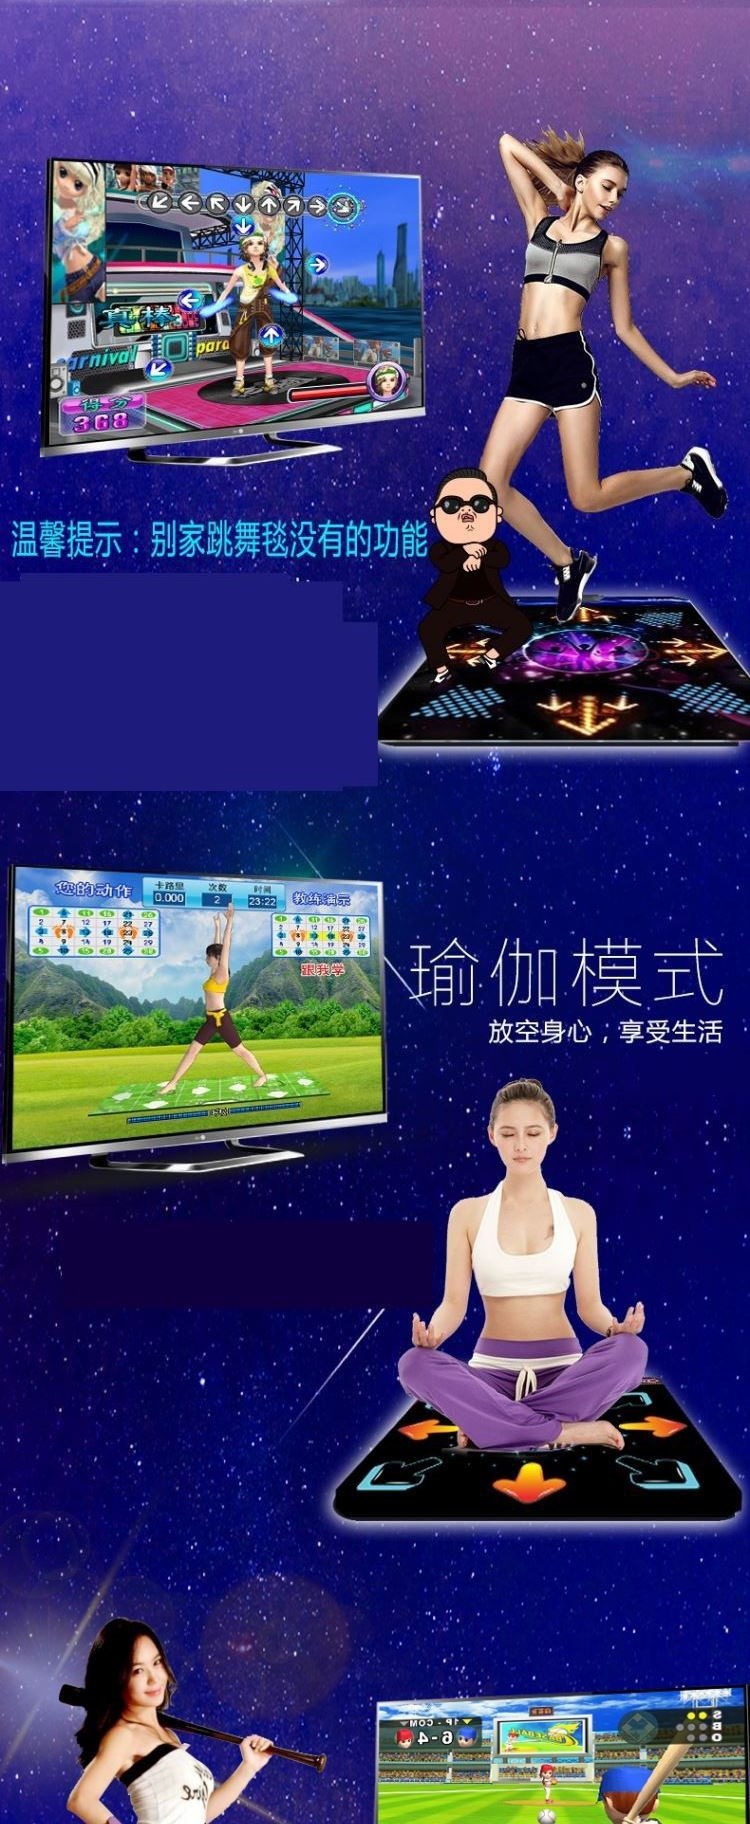 Thảm khiêu vũ đôi không dây Máy khiêu vũ somatosensory tại nhà TV máy tính giao diện sử dụng kép thể thao chạy trò chơi chăn - Dance pad